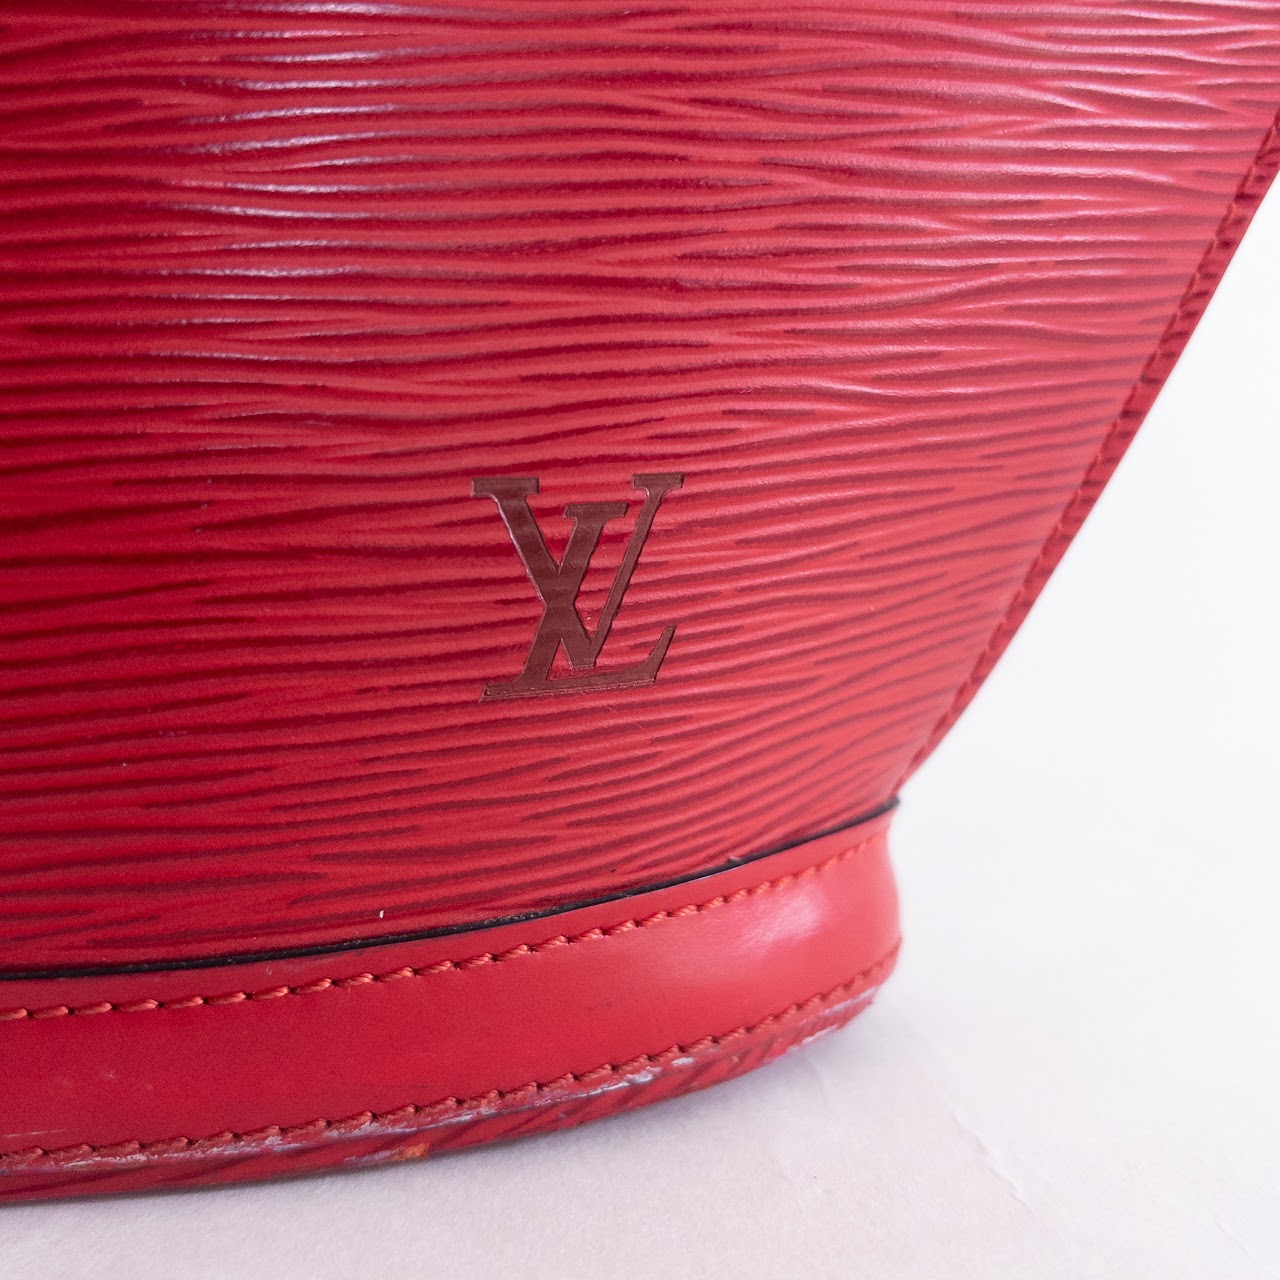 Louis Vuitton Saint Jacques PM Epi Leather Shoulder Bag